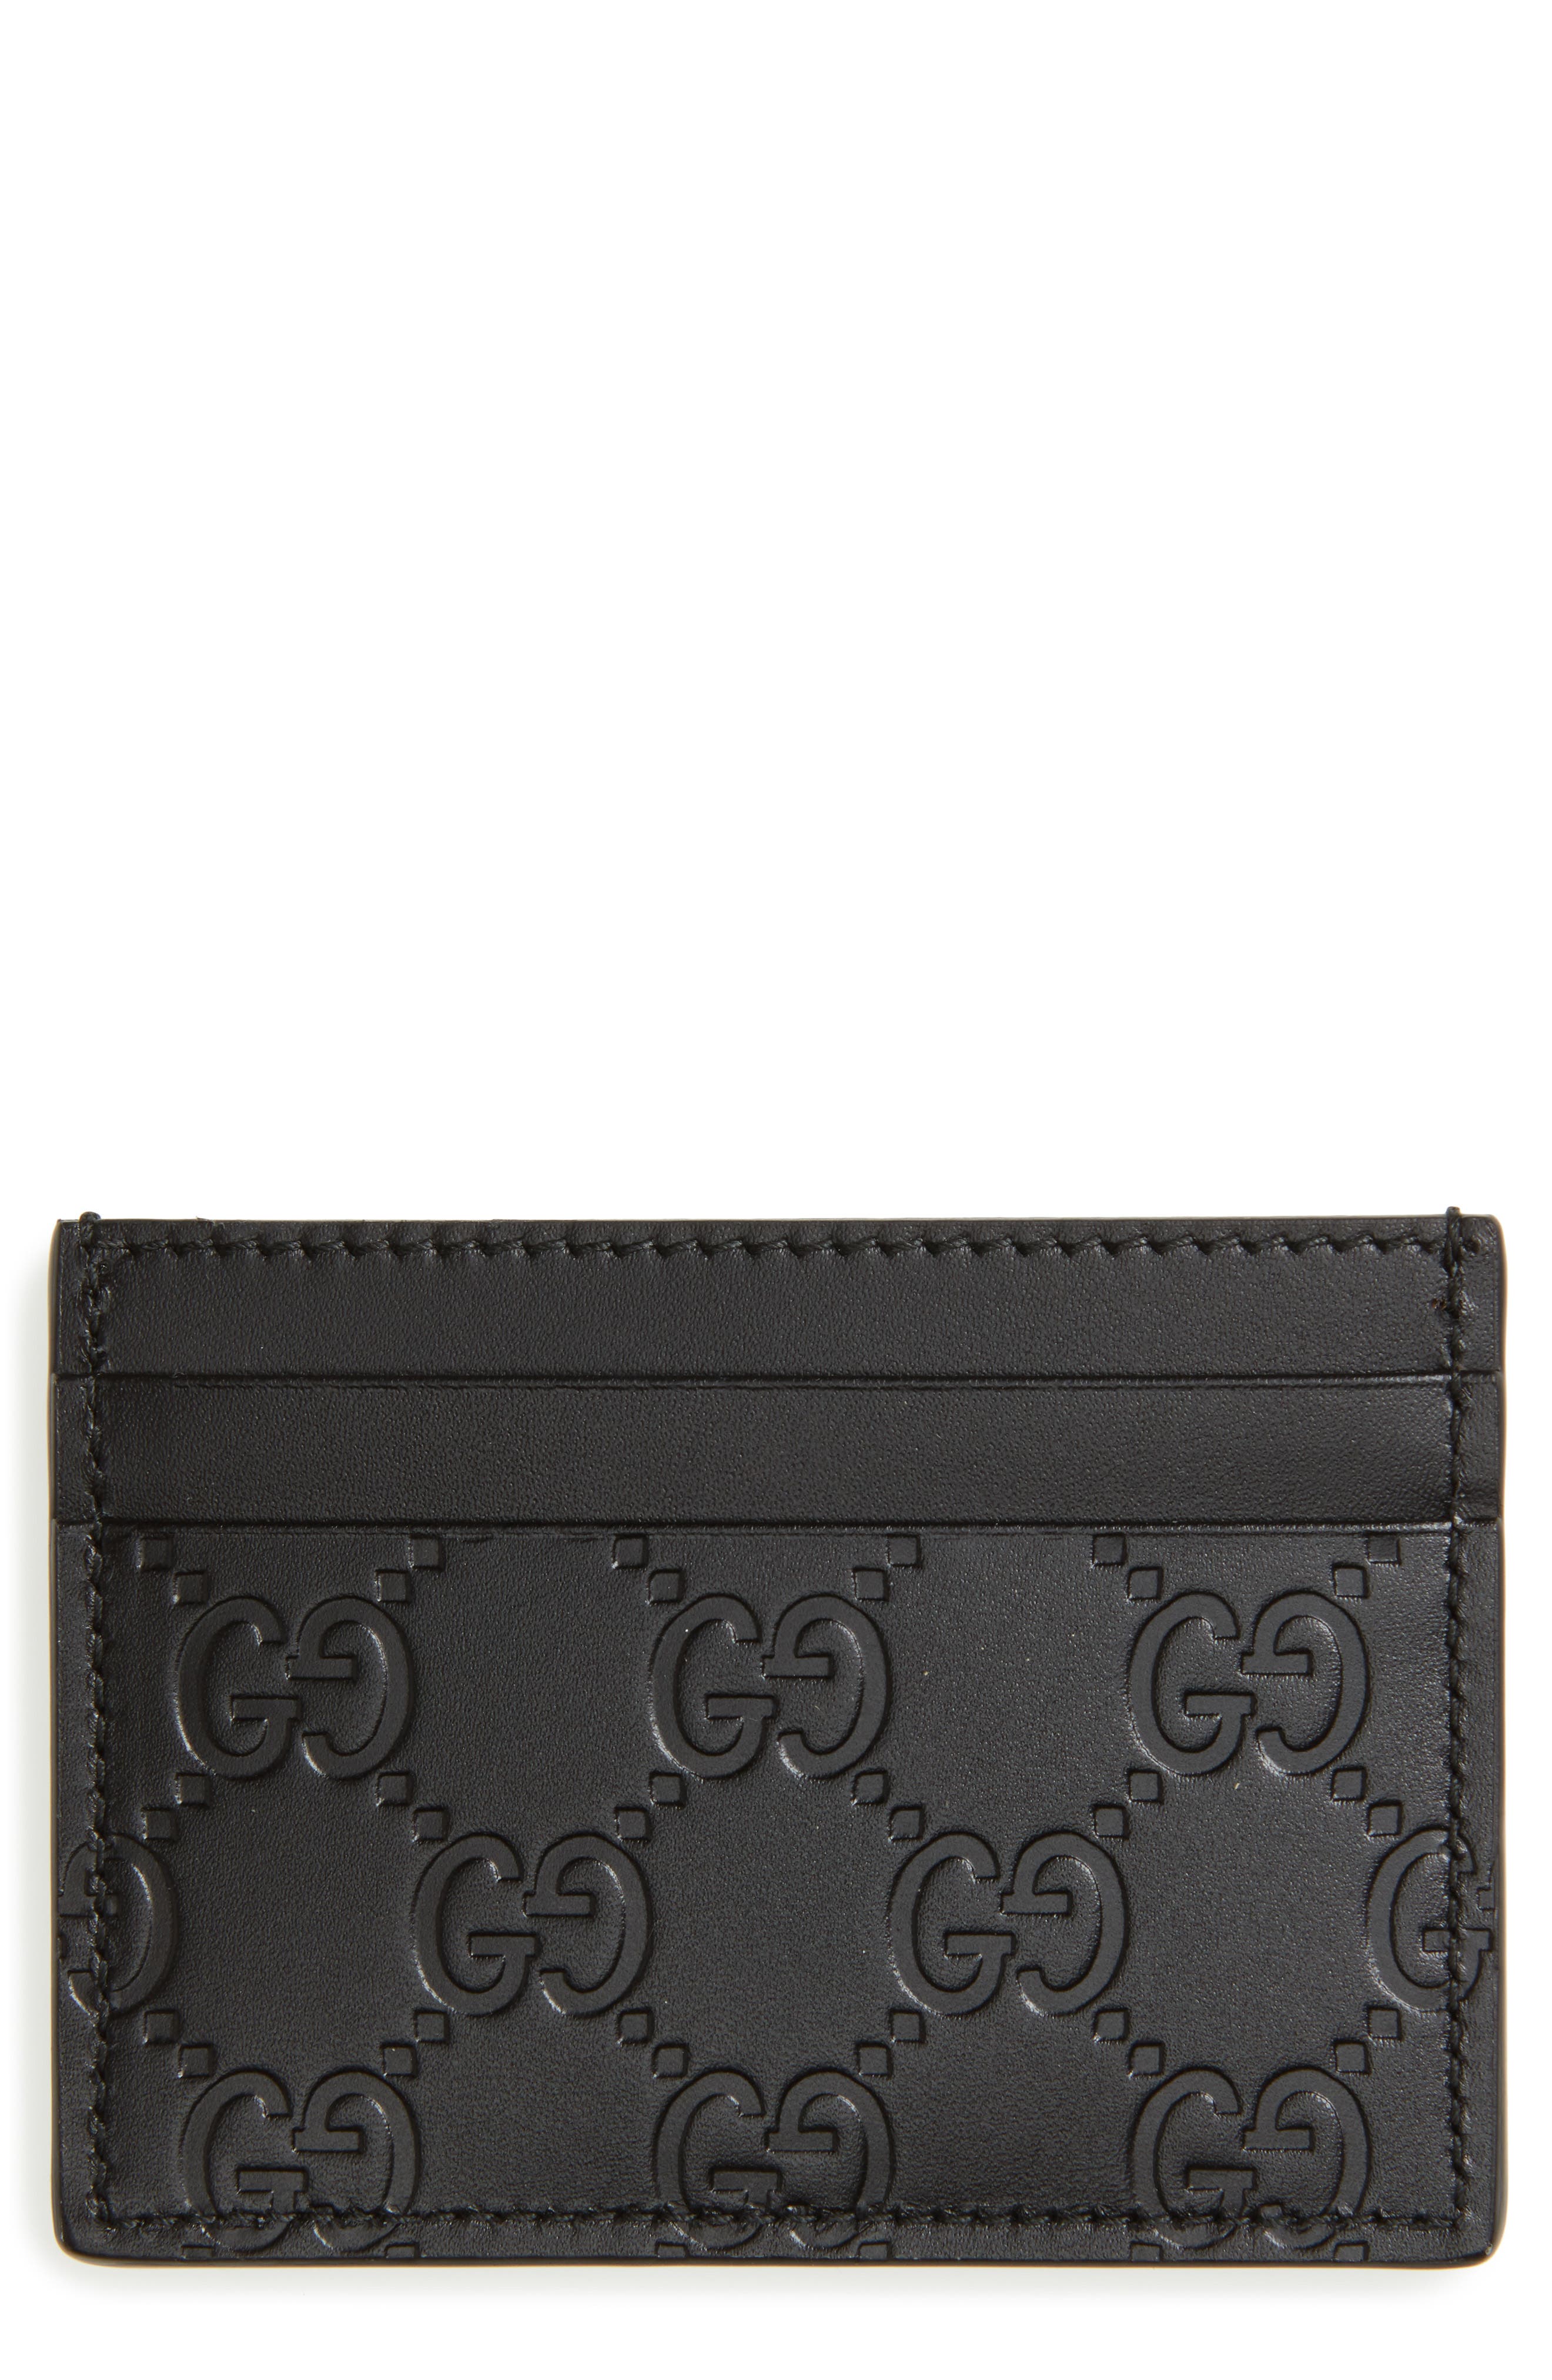 gucci minimalist wallet